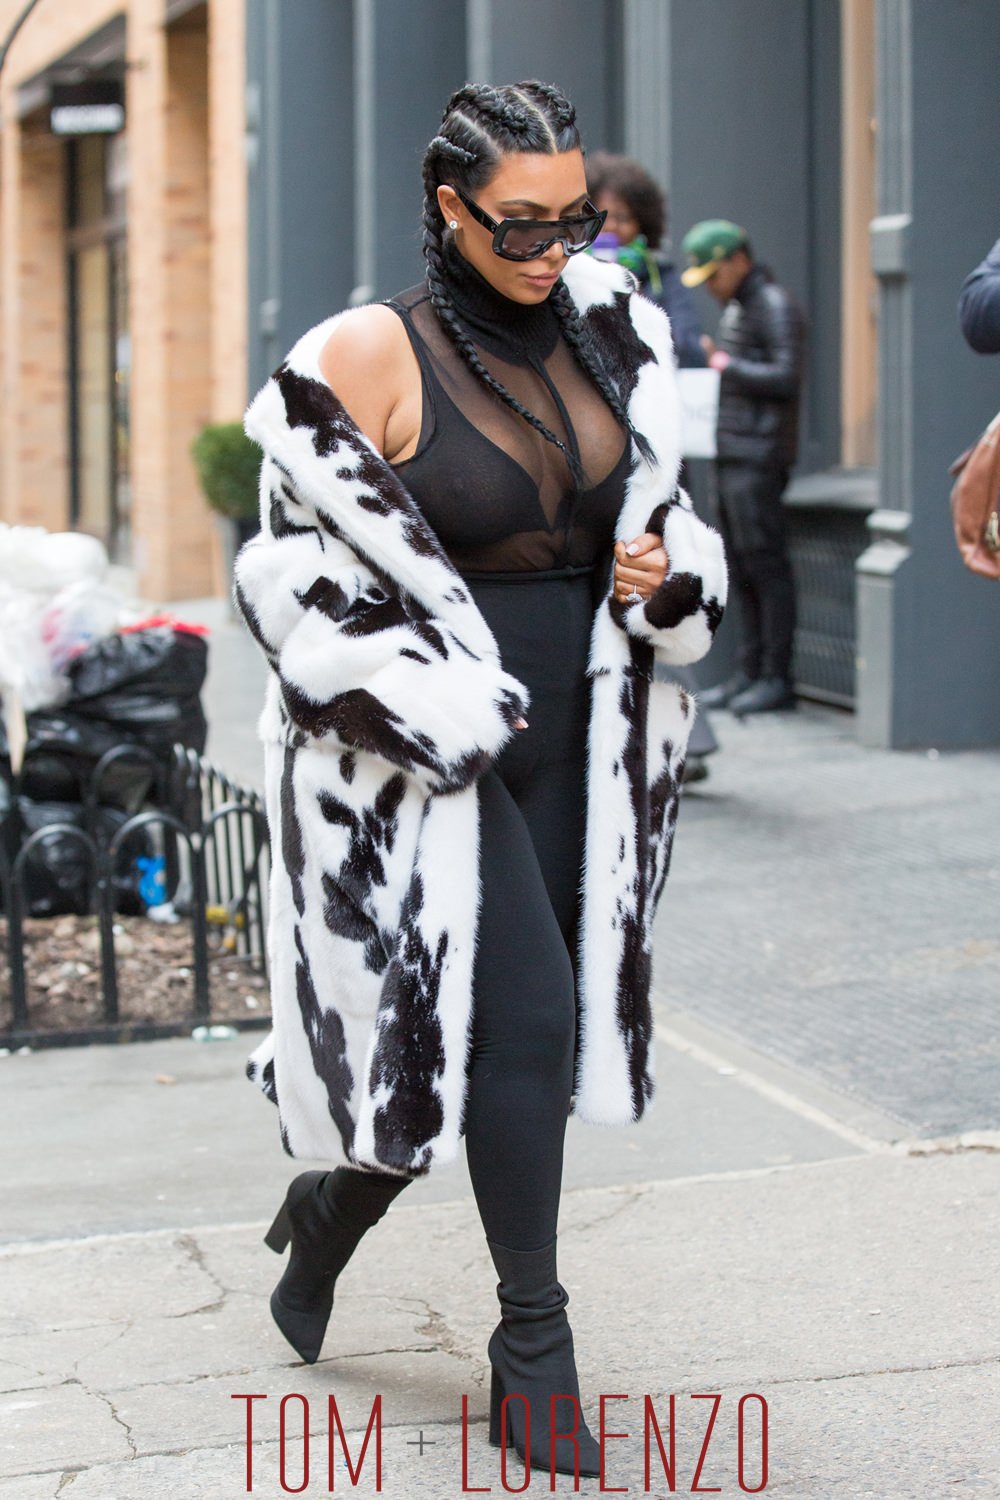 Kim-Kardashian-BWFC-Street-Style-Fashion-GOTSNYC-NYFW-Tom-Lorenzo-Site (1)